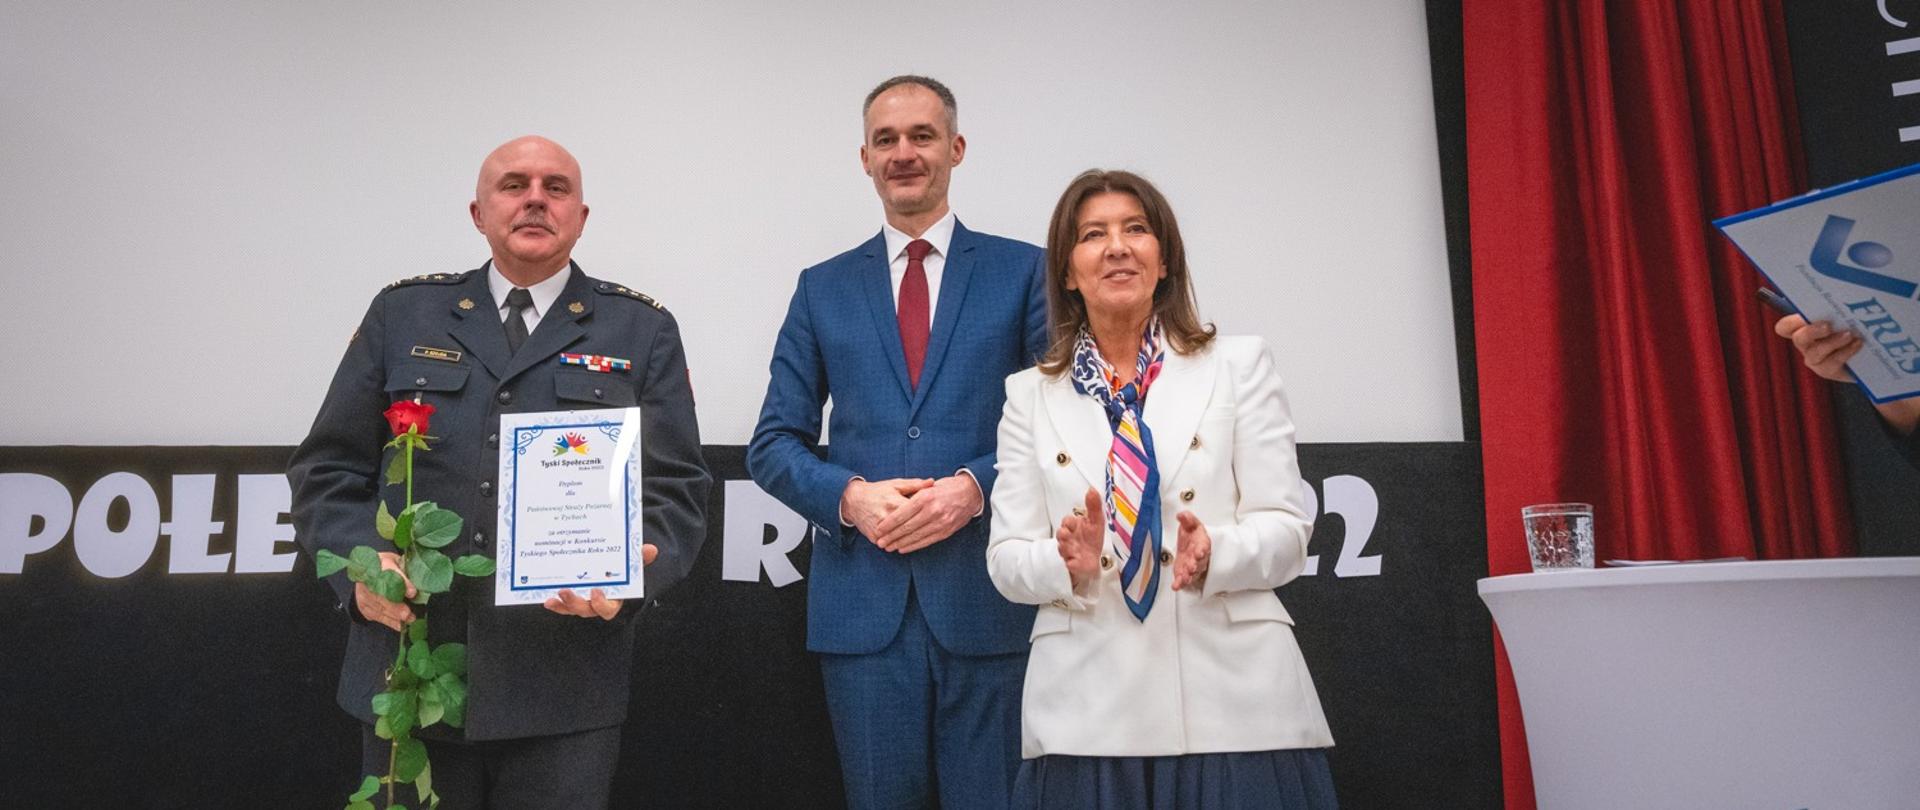 Nominacja Komendy Miejskiej Państwowej Straży Pożarnej w Tychach do Tyskiego Społecznika Roku 2022